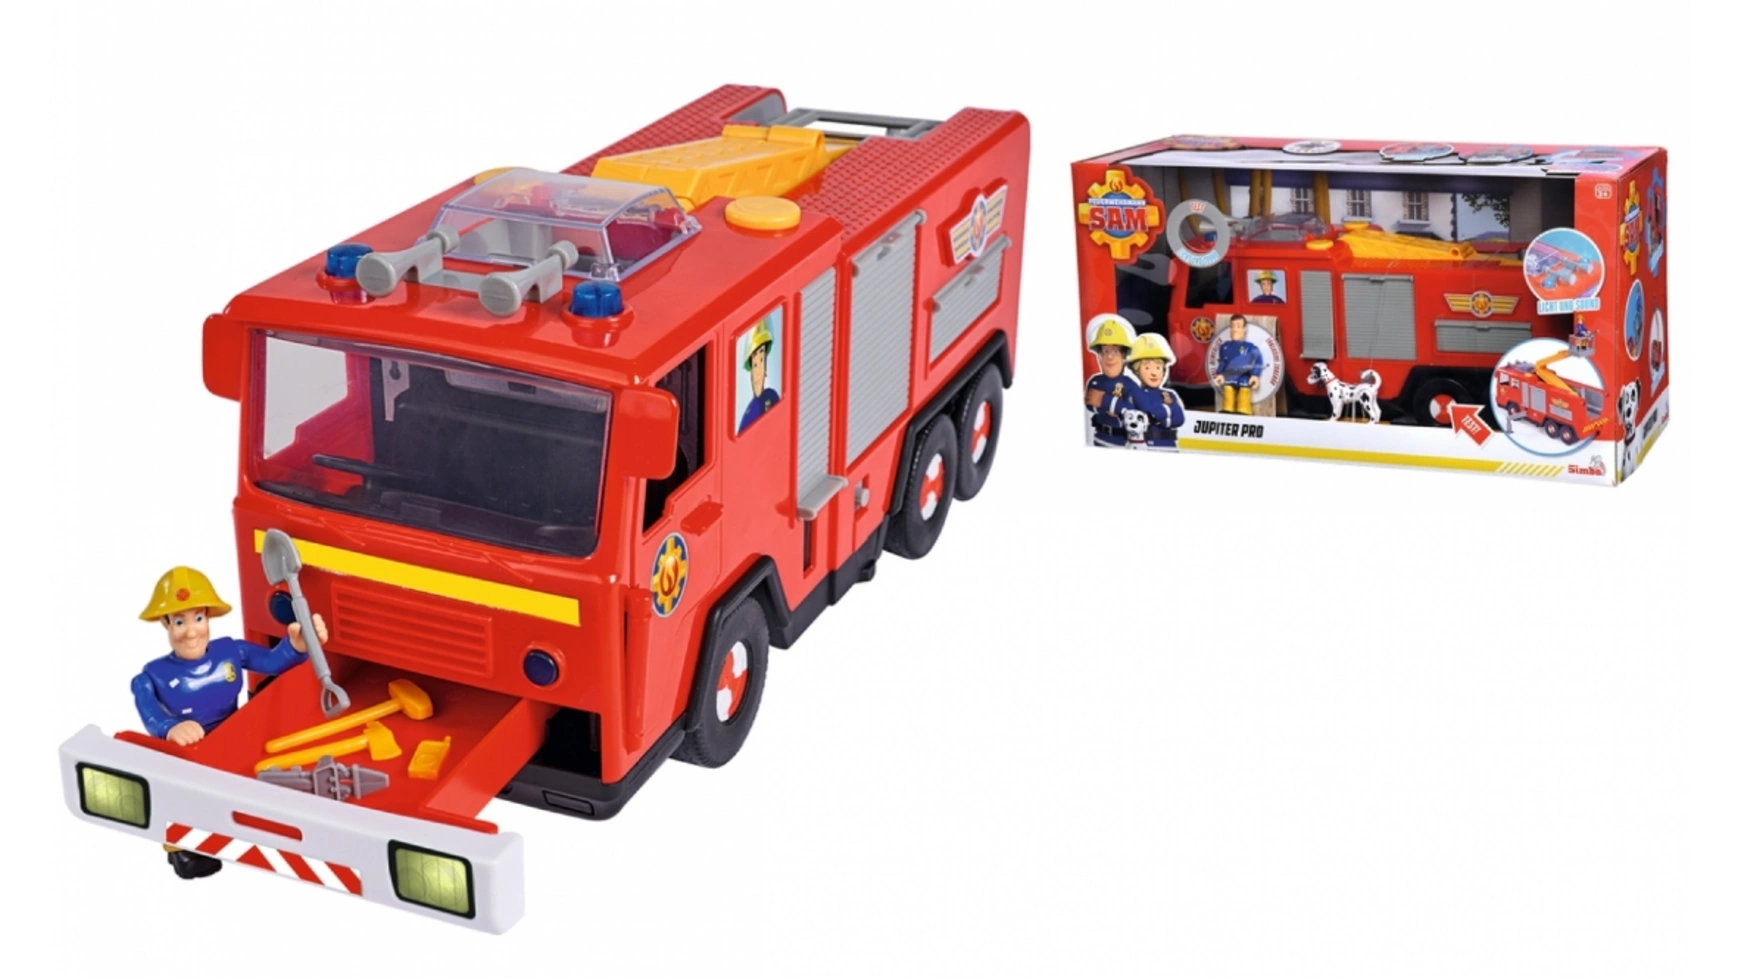 Пожарный сэм сэм юпитер про Simba машины технопарк машина со светом и звуком kamaz пожарная машина 17 см